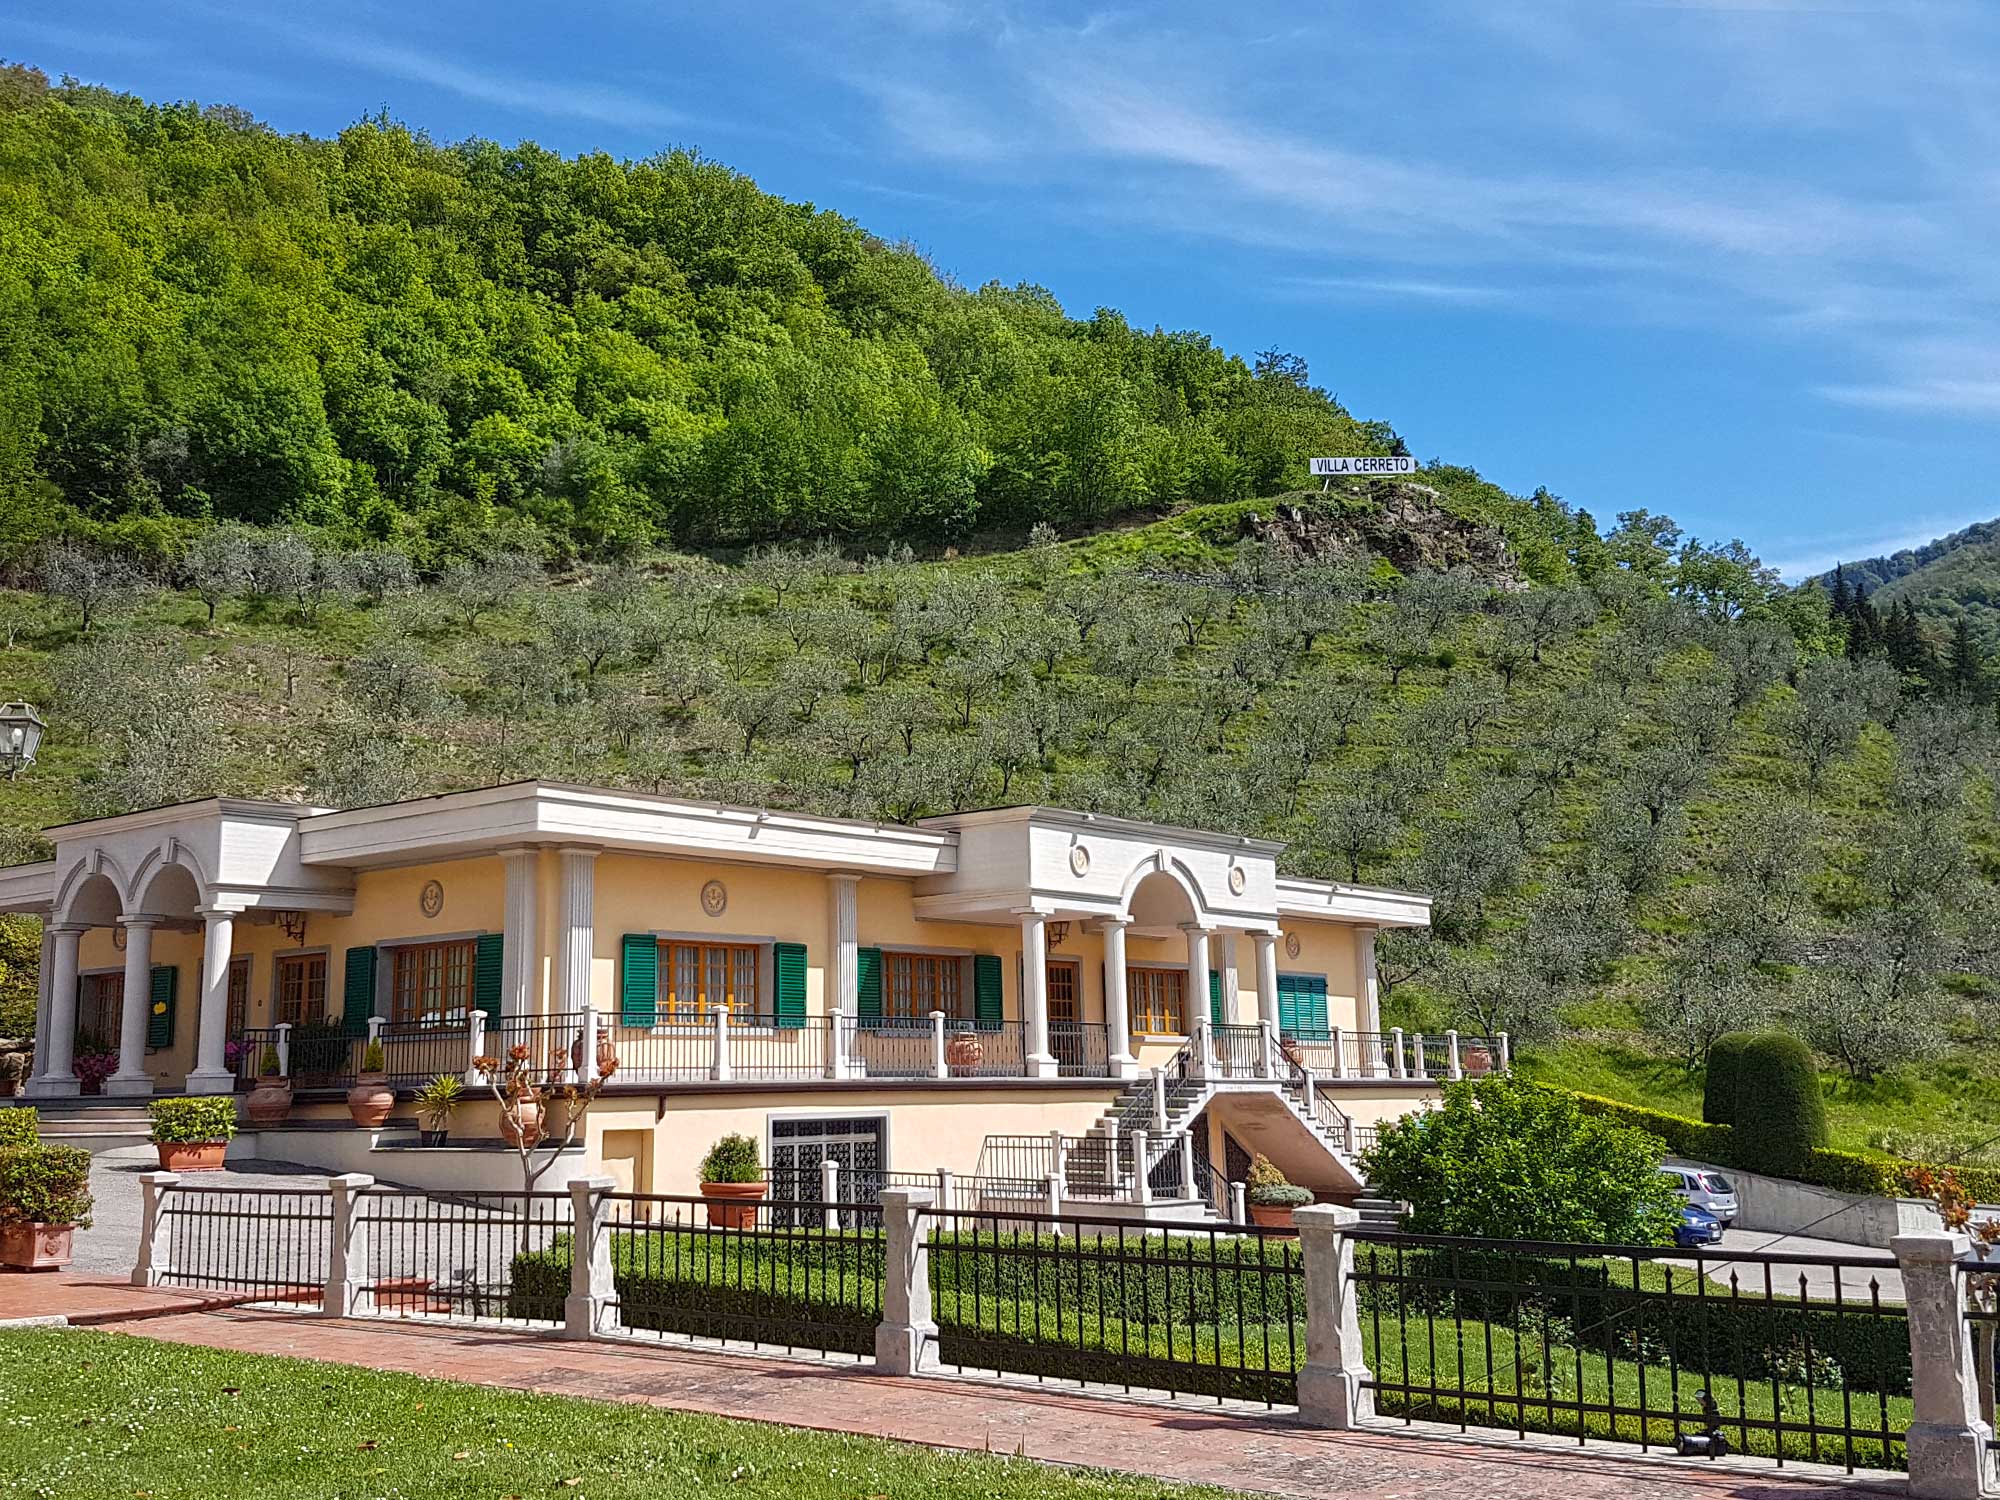 Villa Cerreto per accogliere matrimoni di sicura eleganza e raffinata bellezza